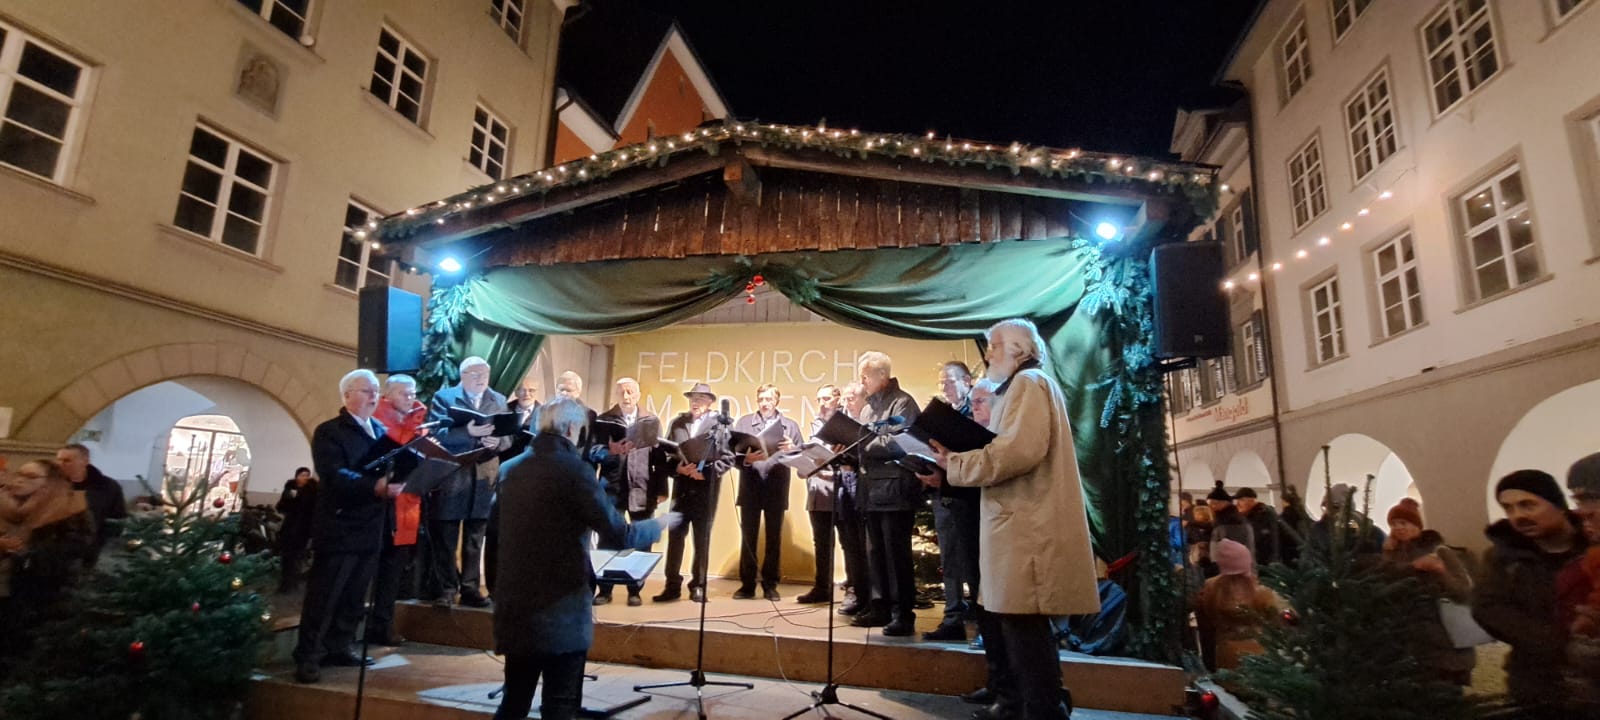 Bludenzer Liederkranz beim Weihnachtsmarkt in Feldkirch